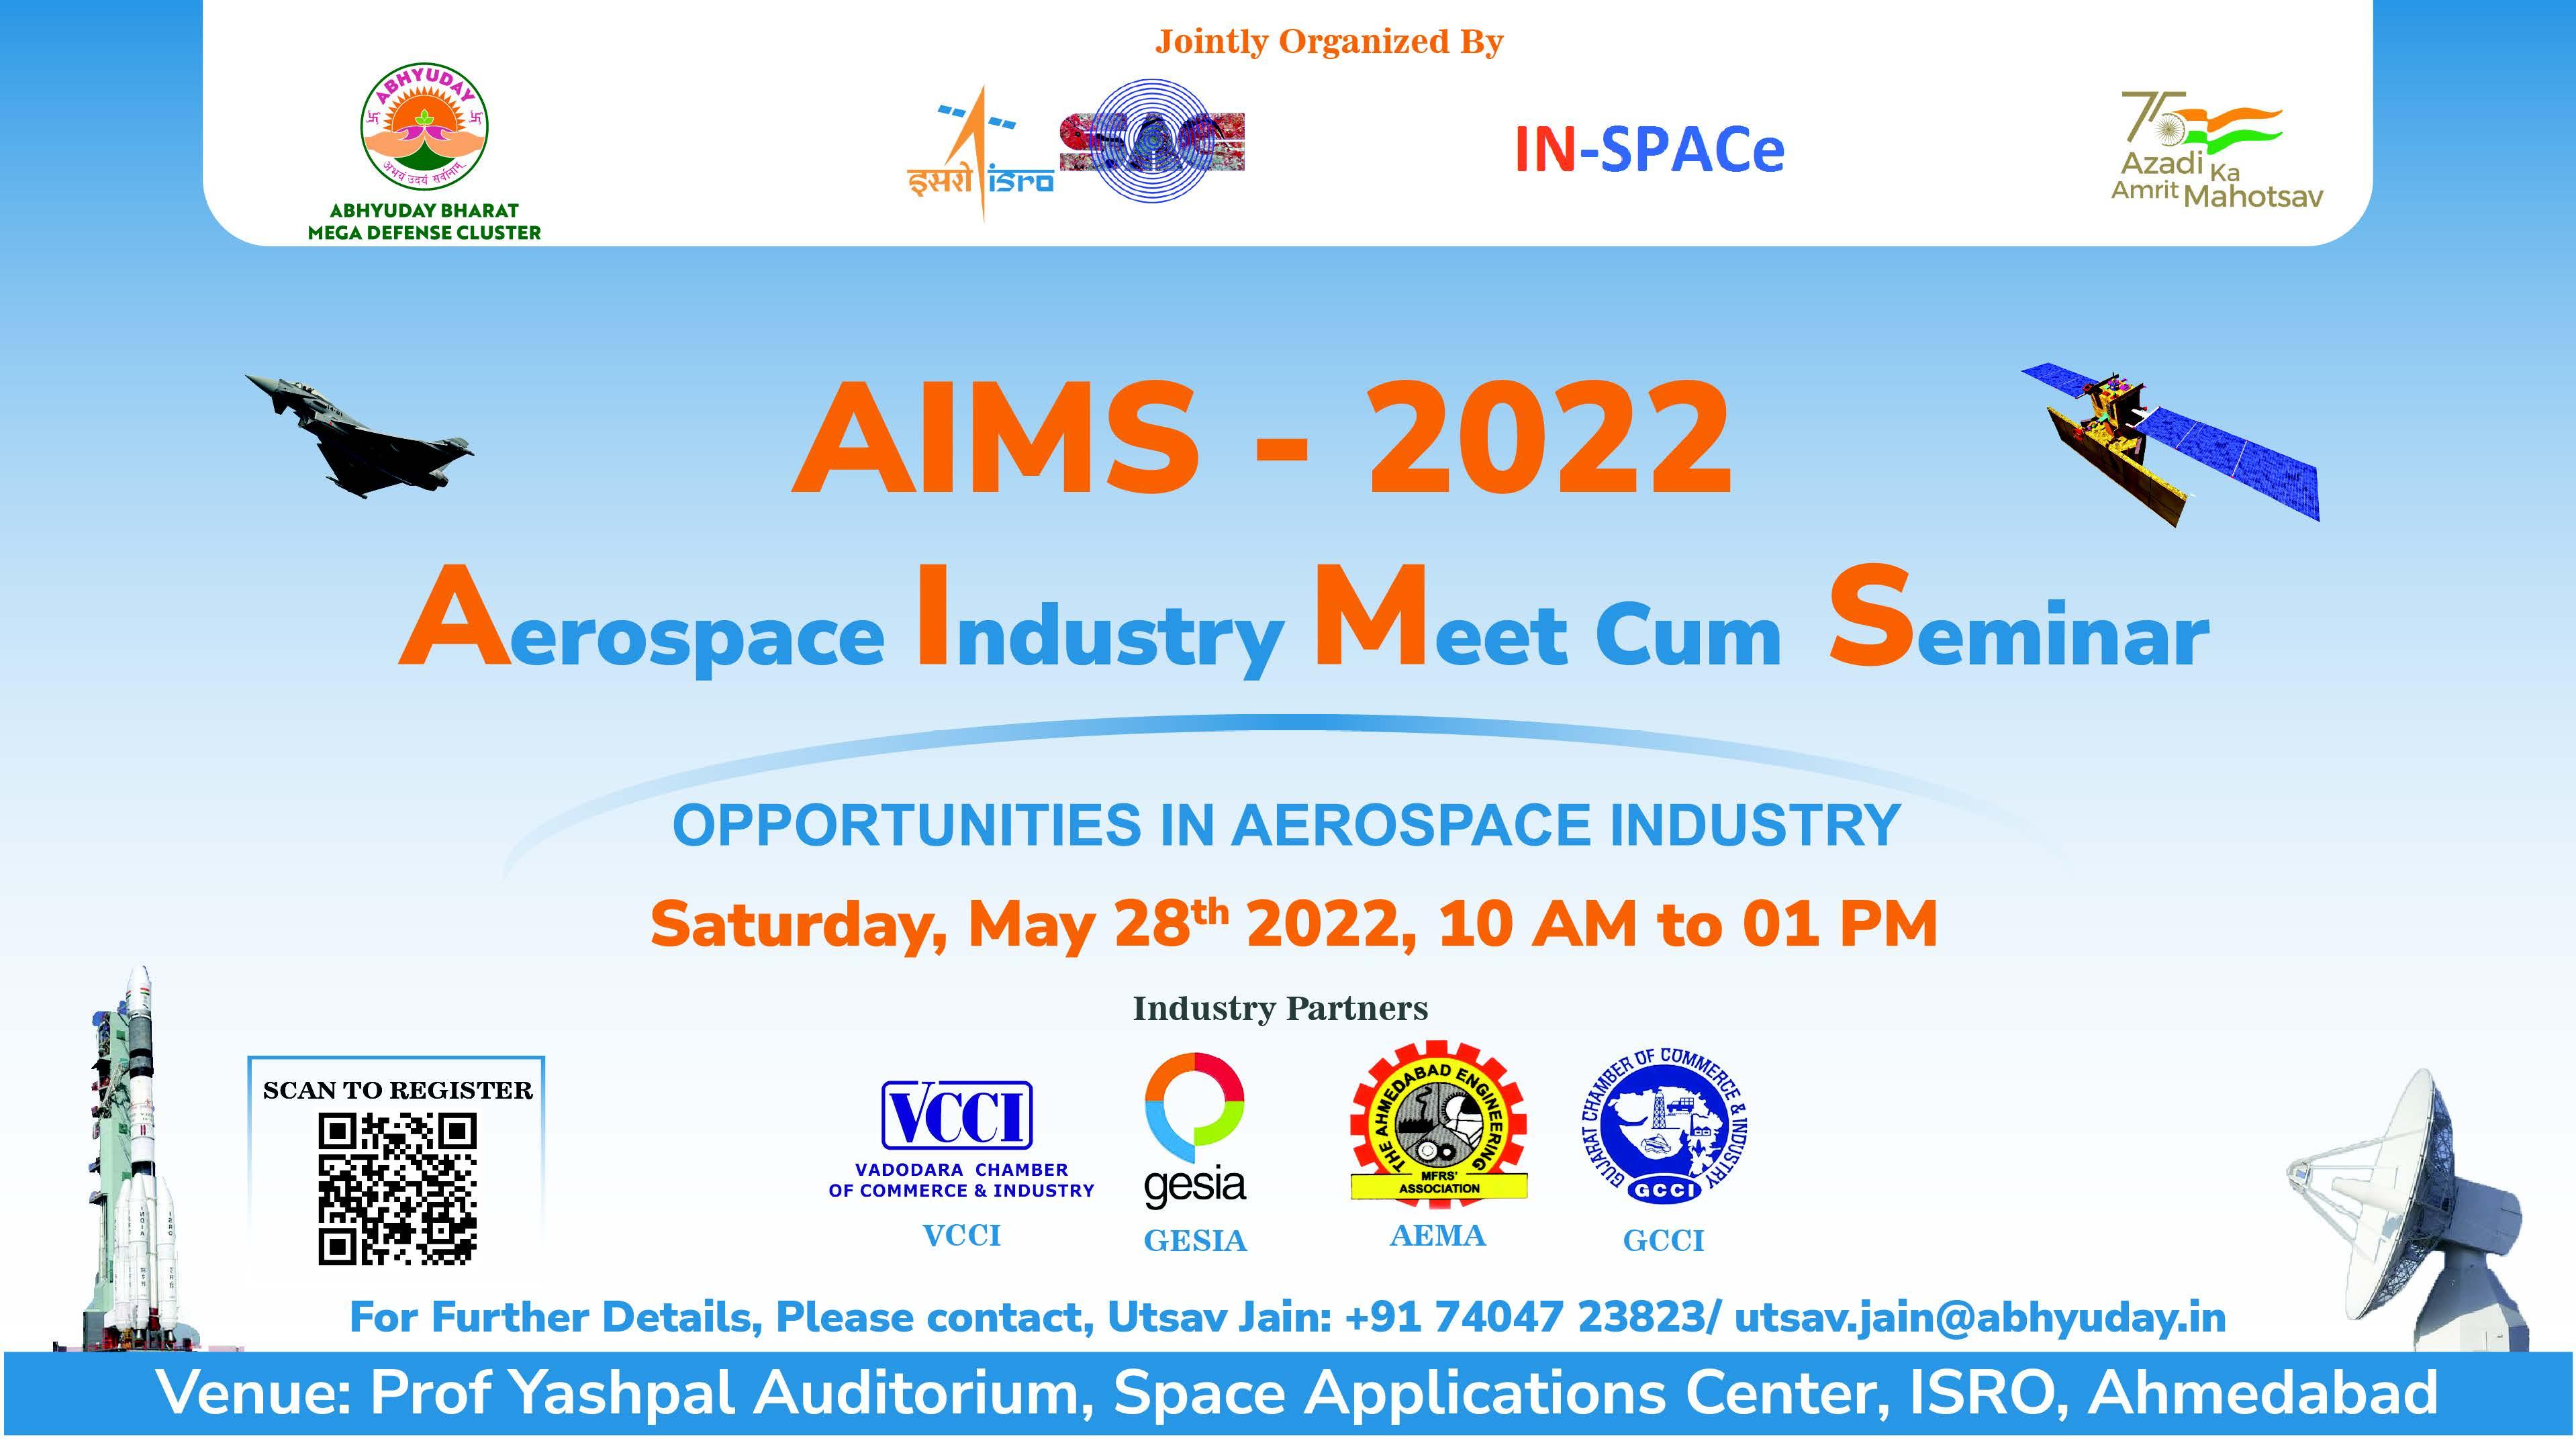 AIMS-2022 (AEROSPACE INDUSTRY MEET CUM SEMINAR)